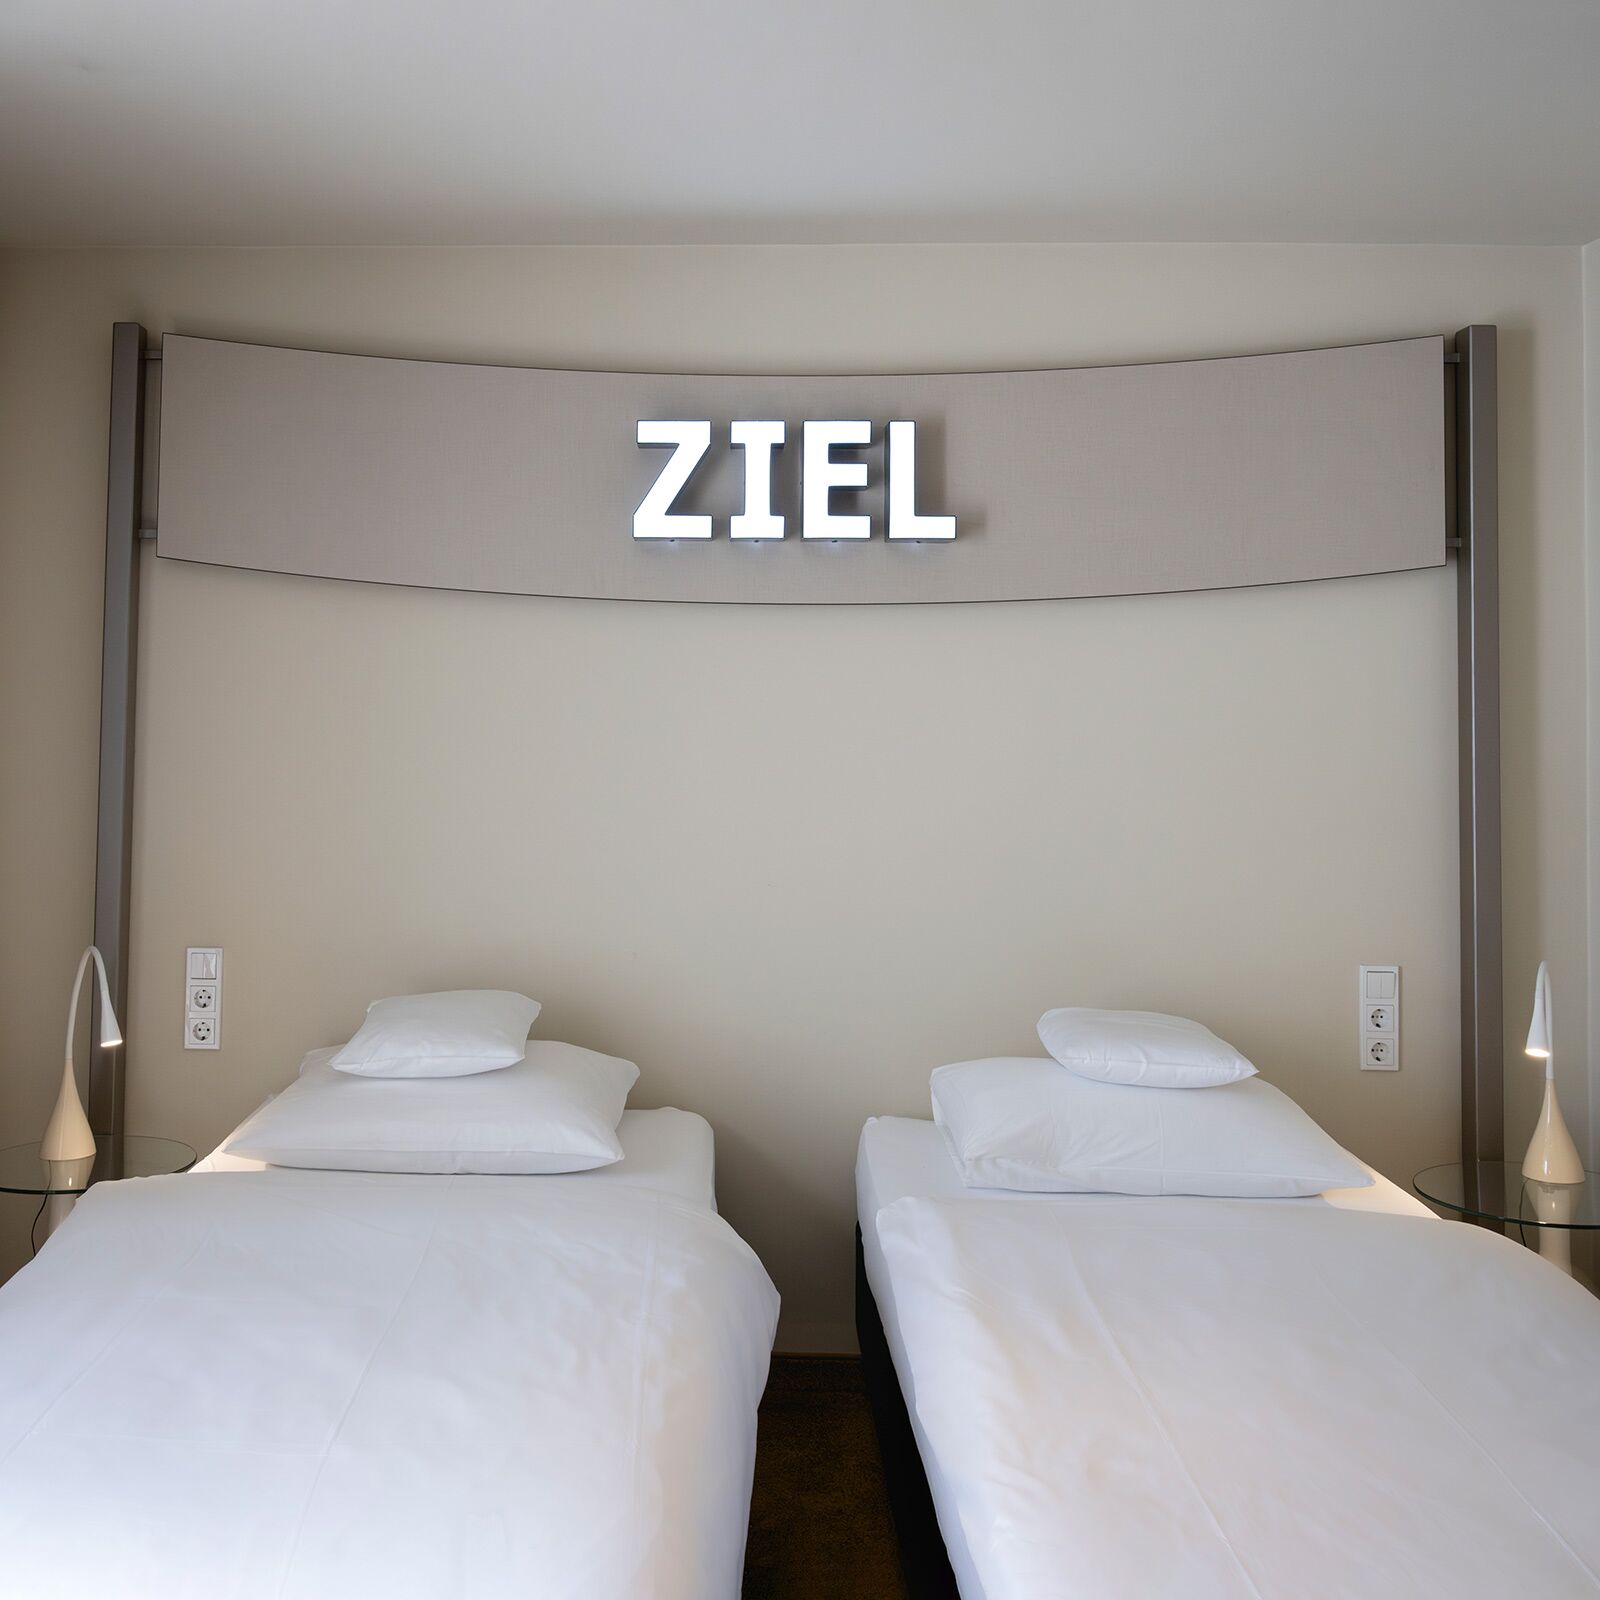 Details Glockenspitze Hotelbetriebsgesellschaft GmbH